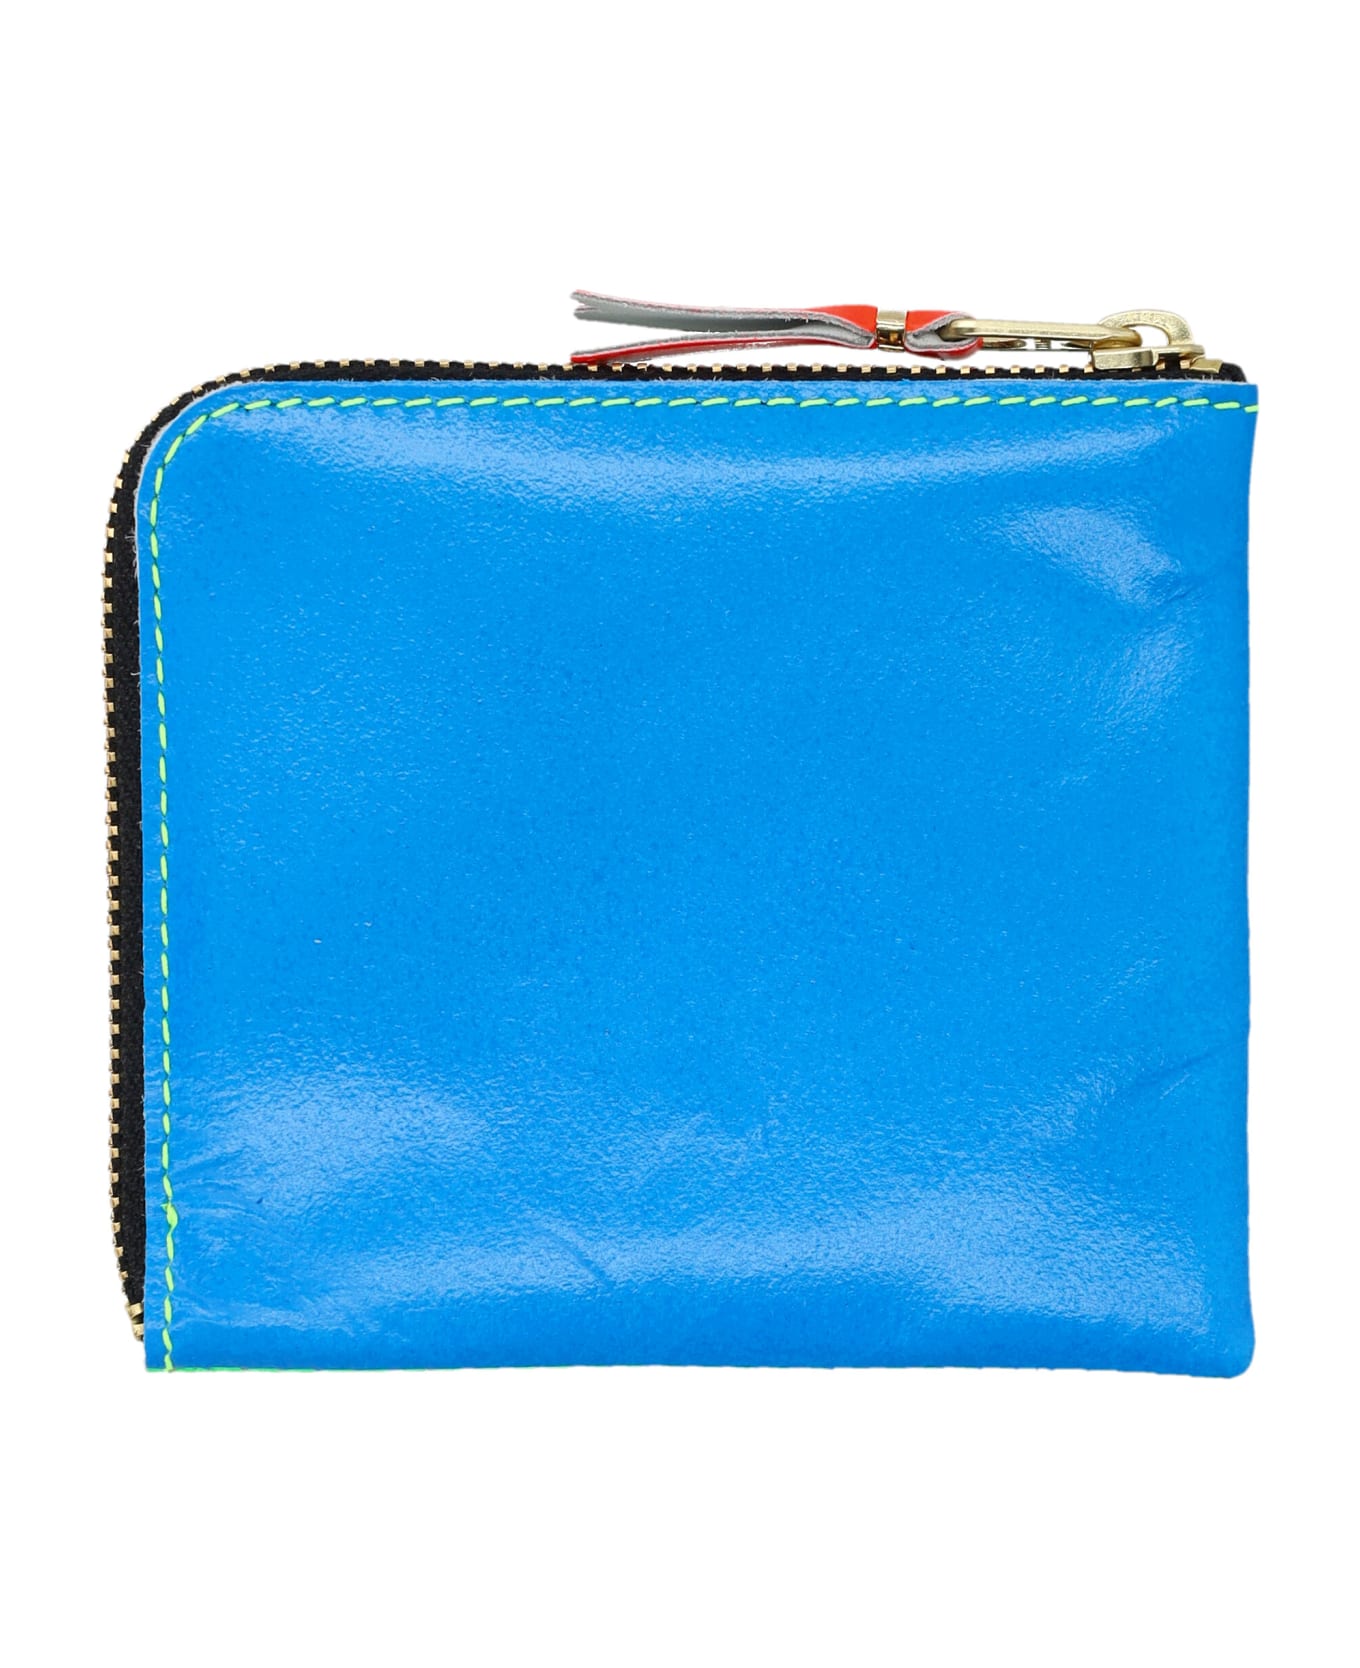 Comme des Garçons Wallet Super Fluo Small Zip Coin Wallet - GREEN BLUE 財布